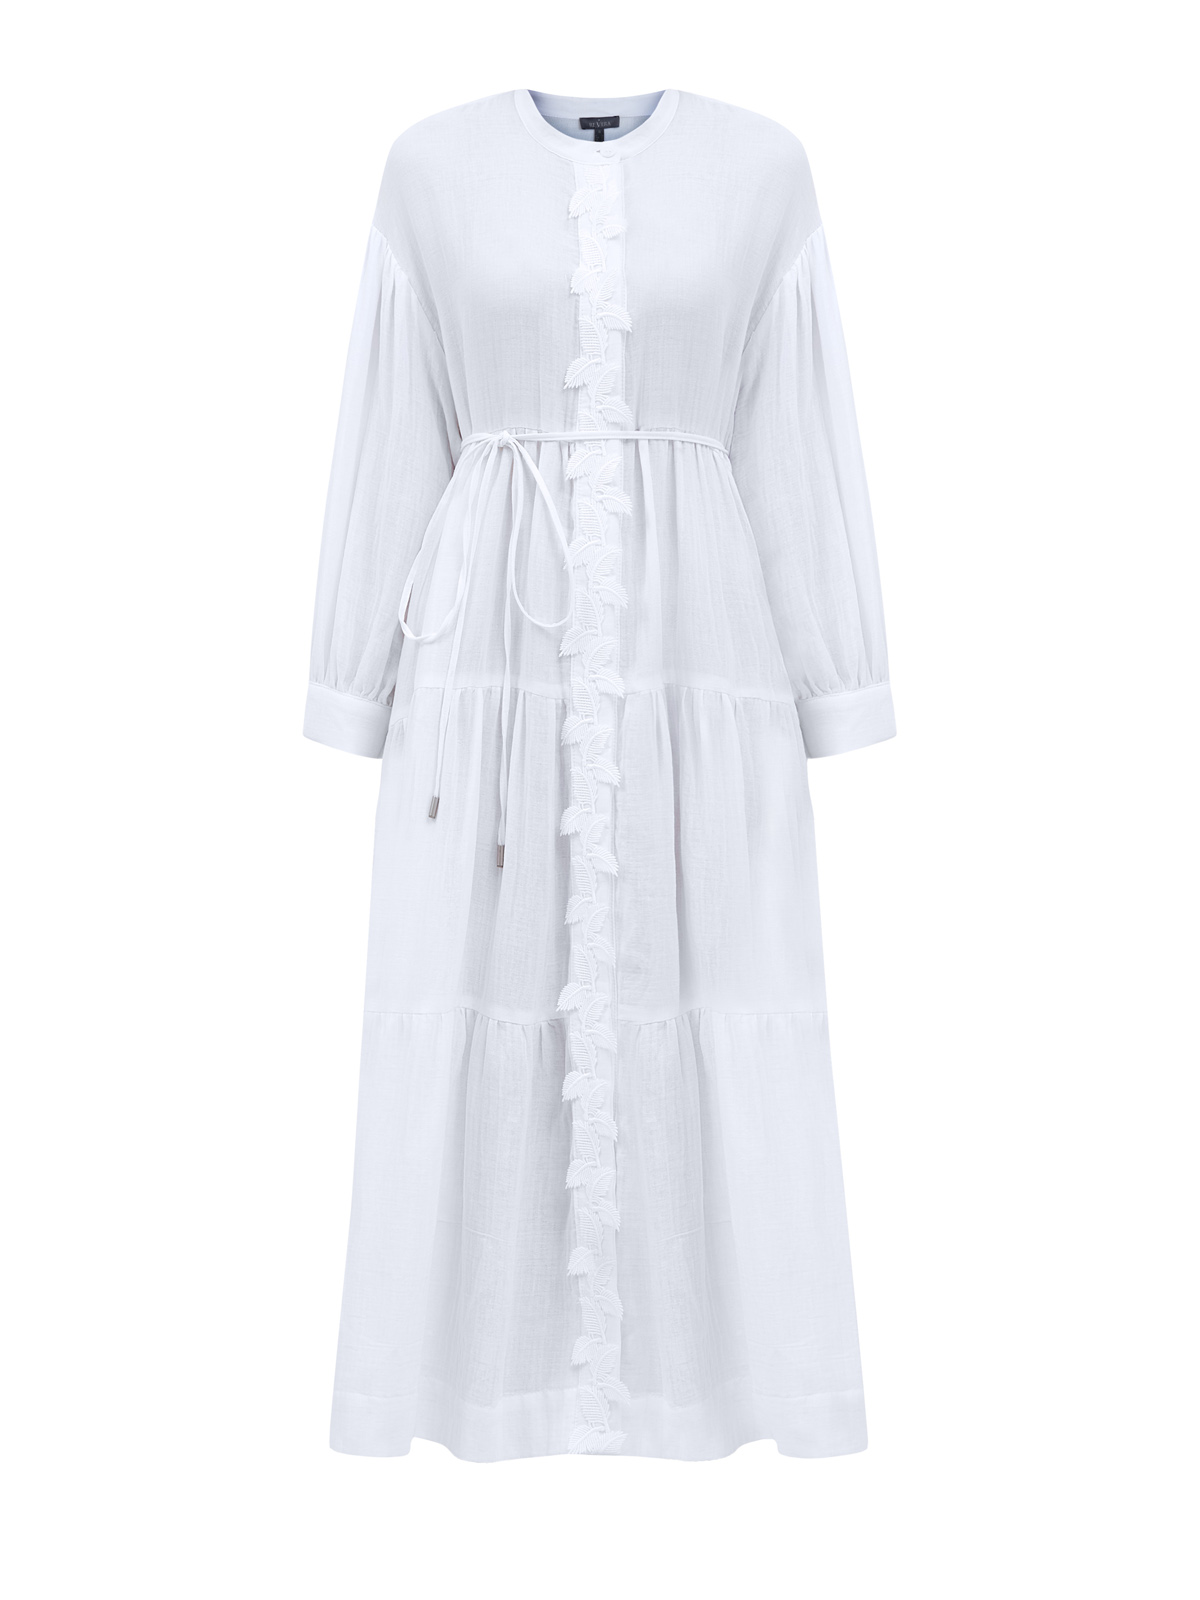 Хлопковое платье свободного кроя с узорной вышивкой и поясом RE VERA, цвет белый, размер 42;44;46